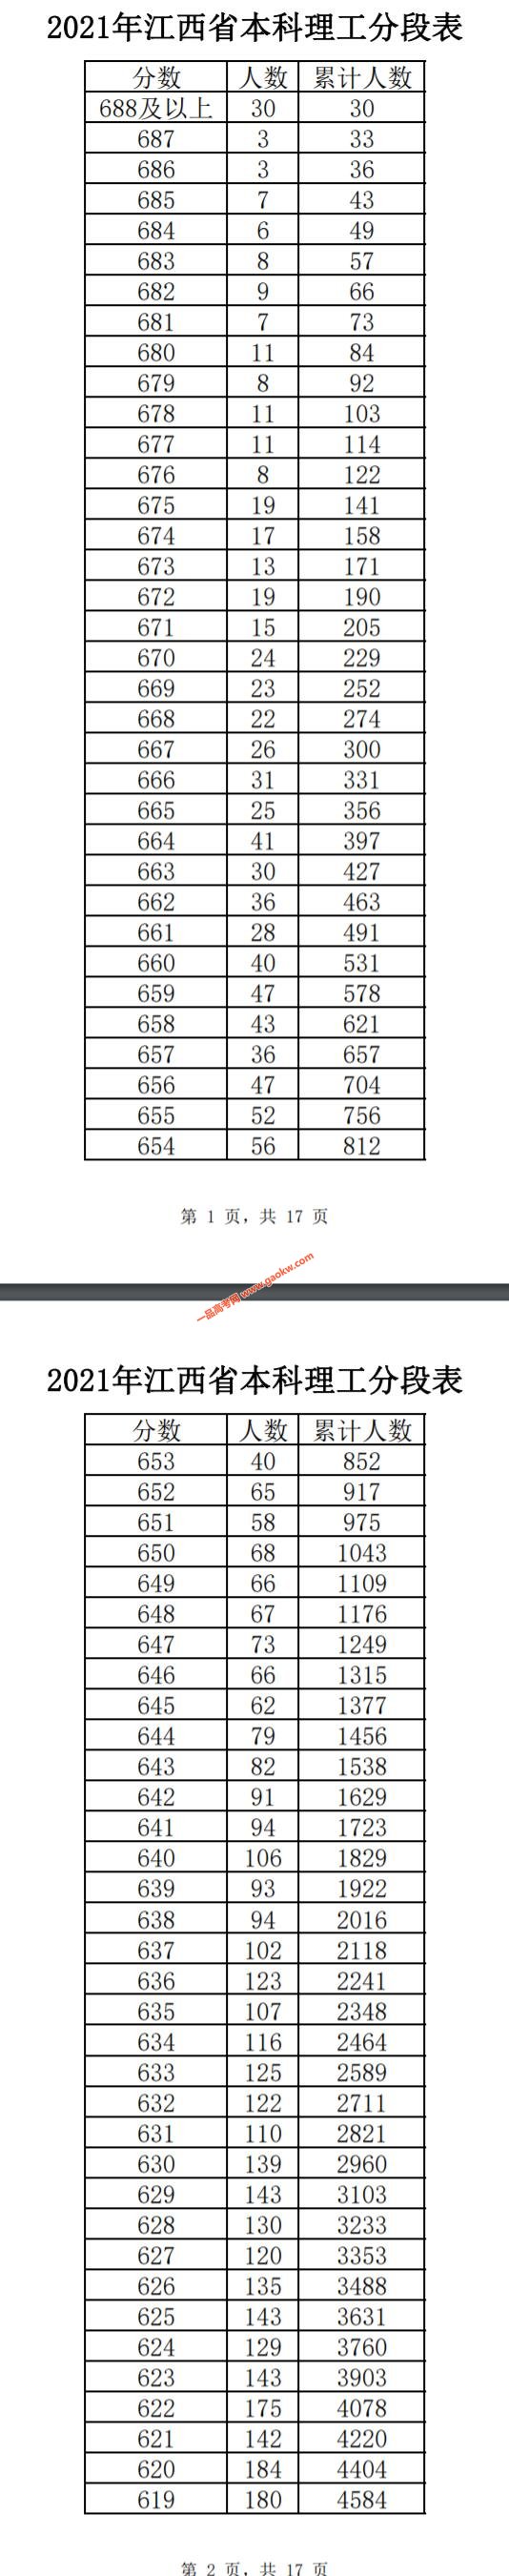 2021年江西省本科理工成绩排名1分段表